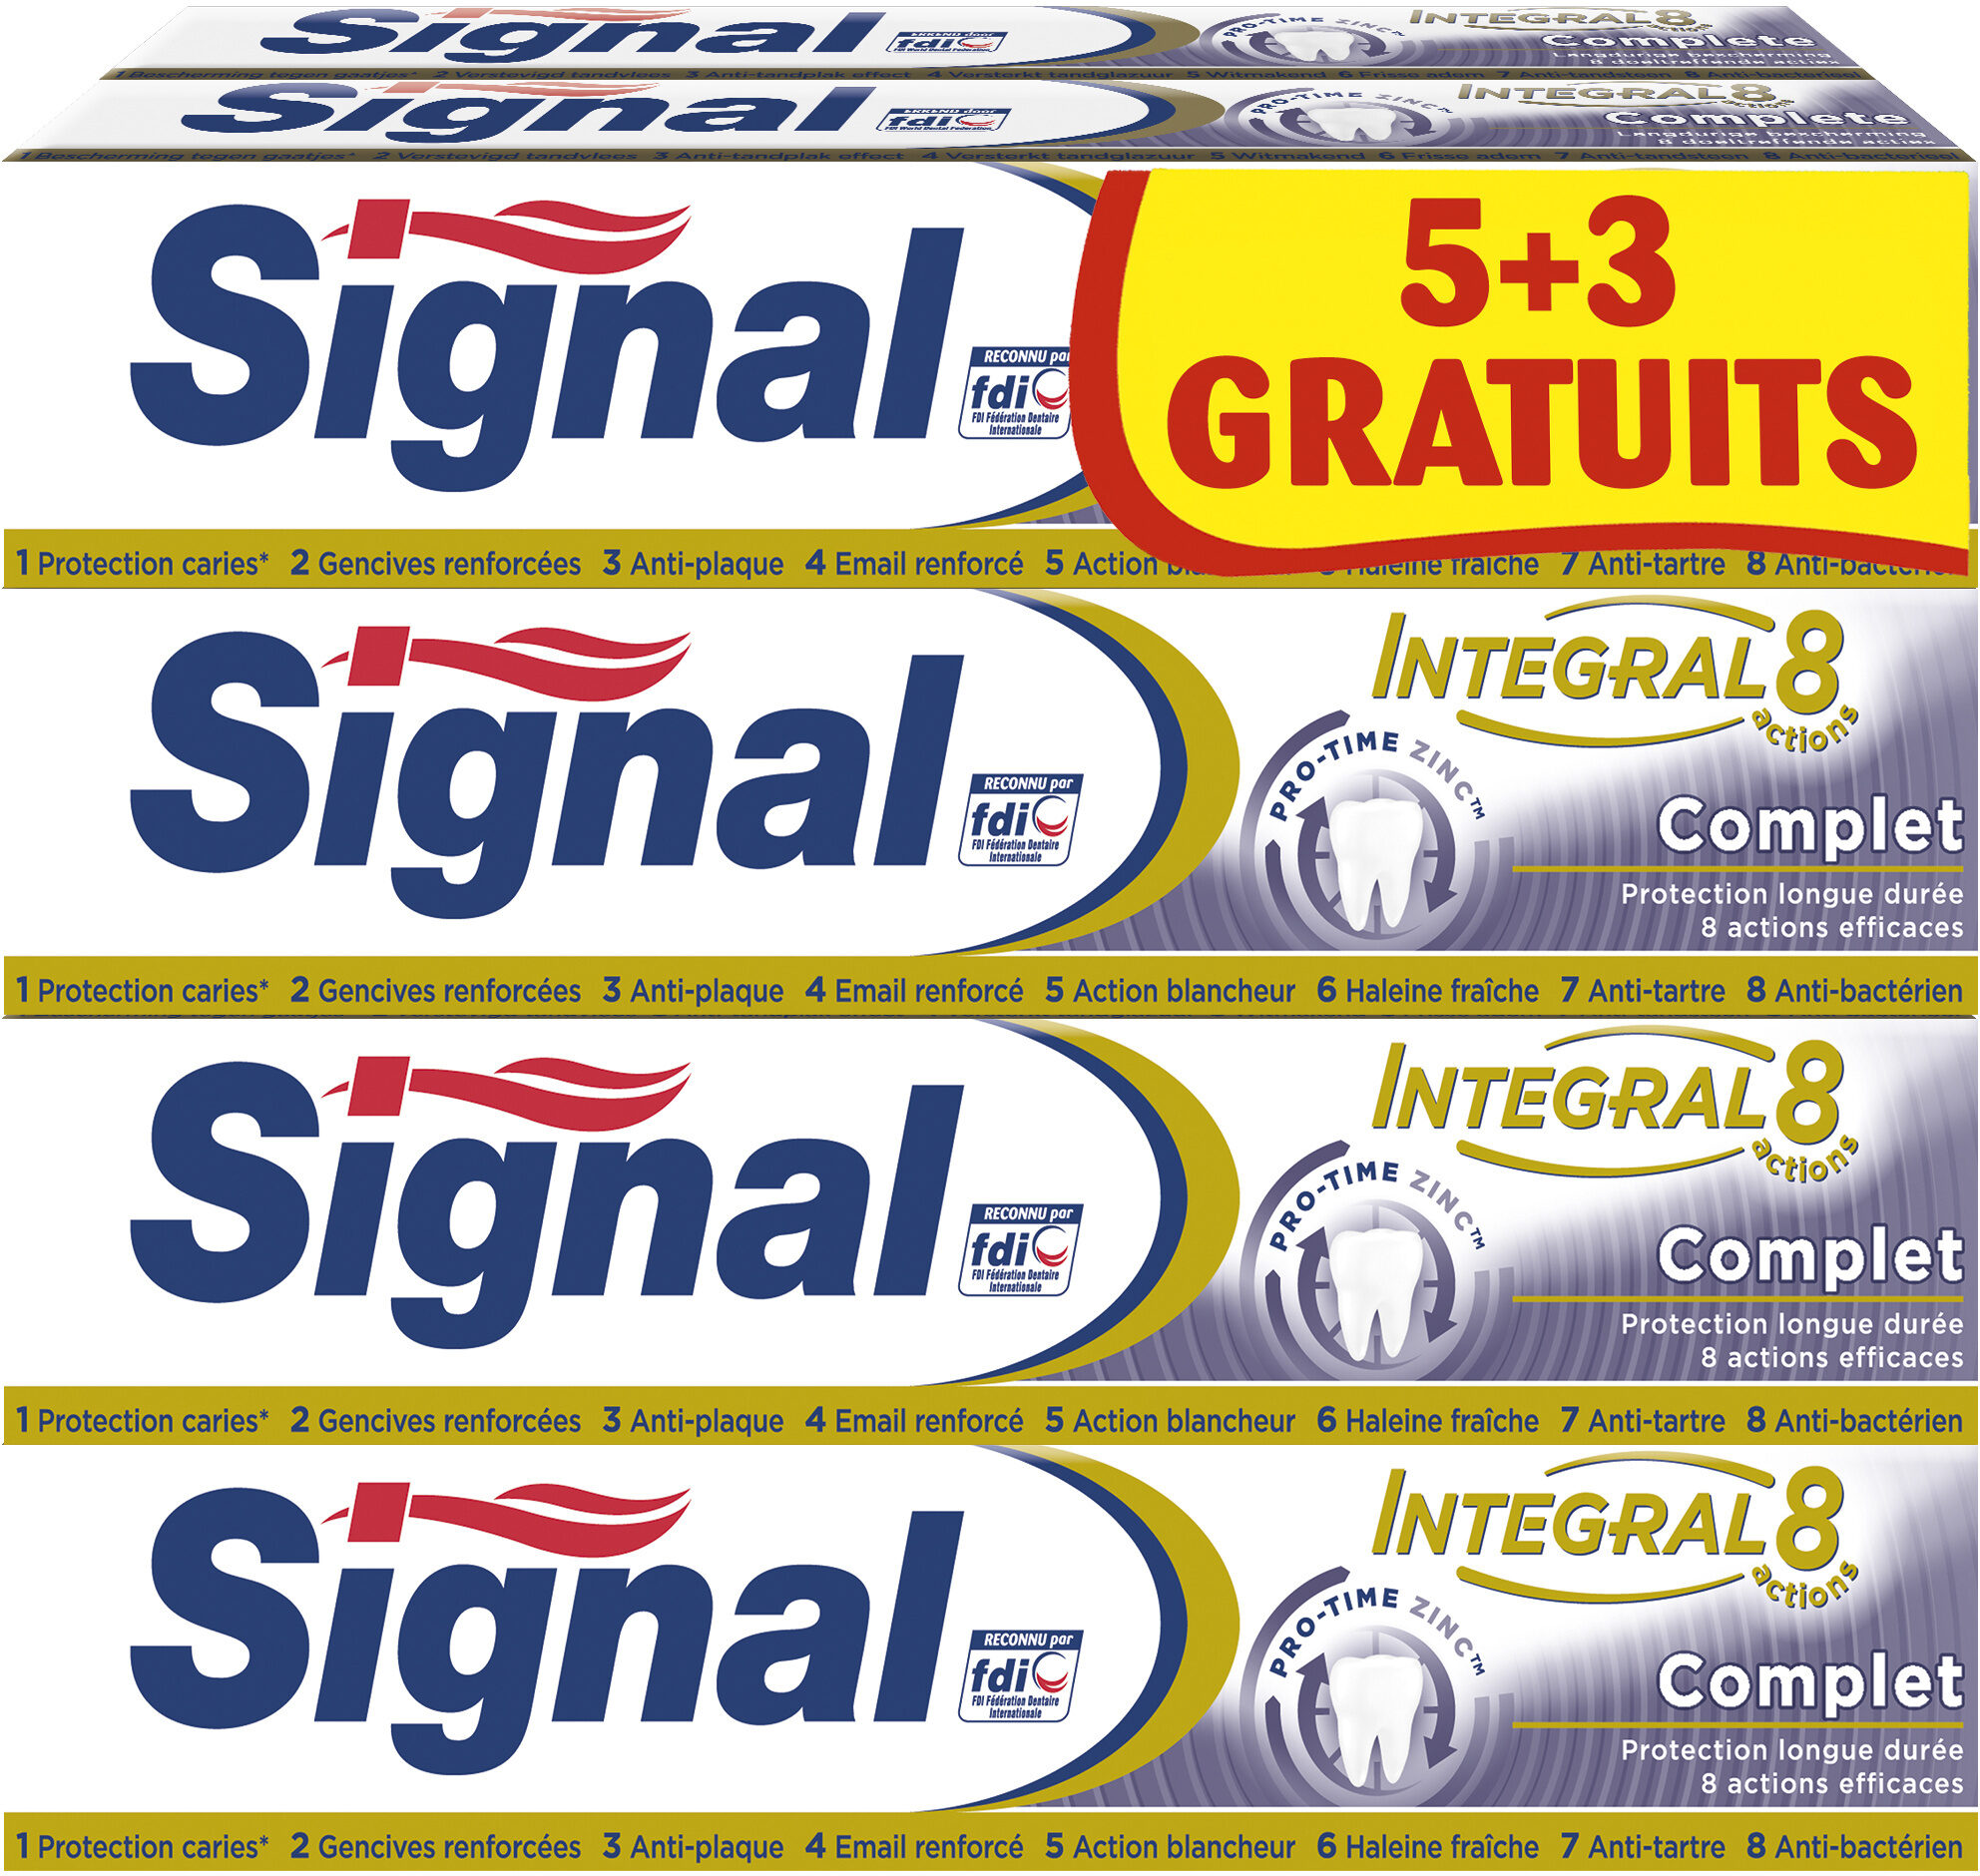 Signal Intégral 8 Dentifrice Complet Tube 75ml Lot de 8(5+3 Gratuits) - Produit - fr